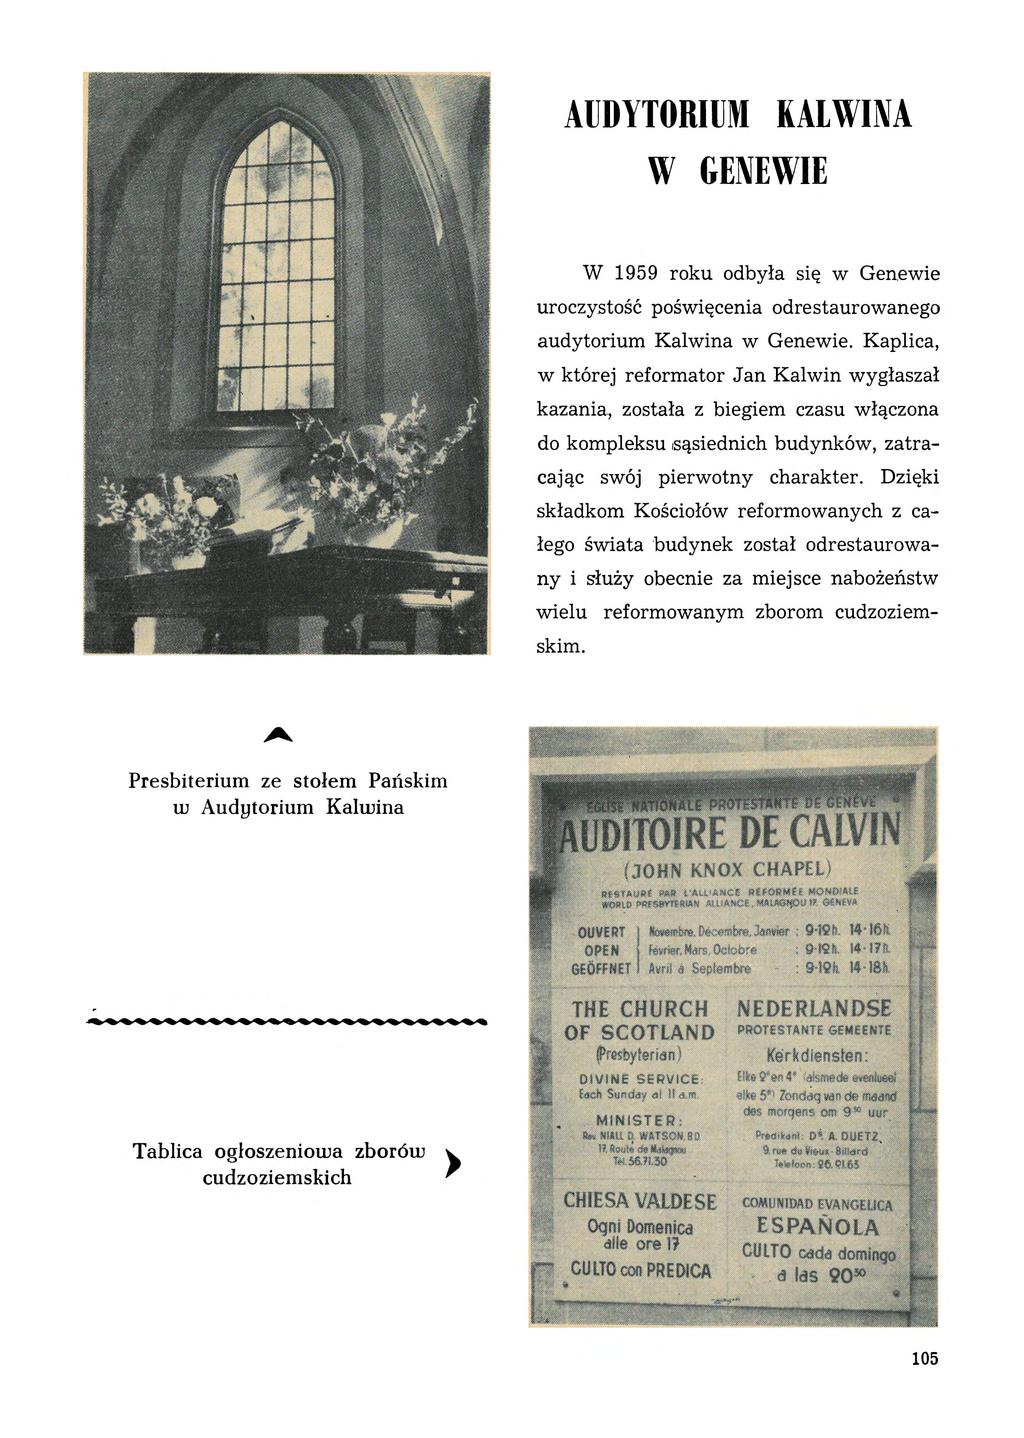 AUDYTORIUM KALWINA W GENEWIE W 1959 roku odbyła się w Genewie uroczystość poświęcenia odrestaurowanego audytorium Kalwina w Genewie.